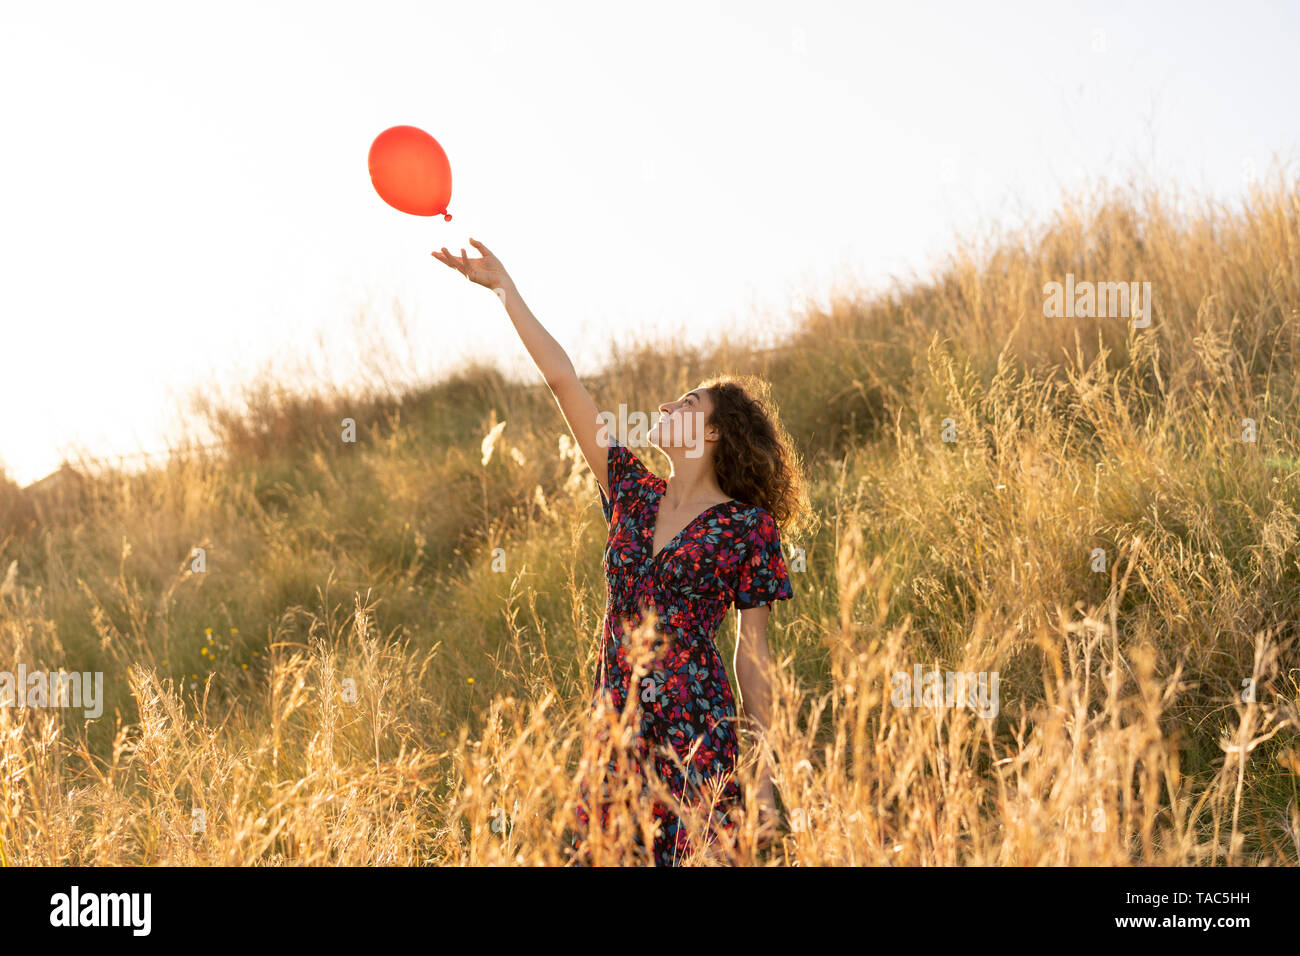 Glückliche junge Frau, die im Sommer Wiese, Loslassen von einem roten Ballon Stockfoto